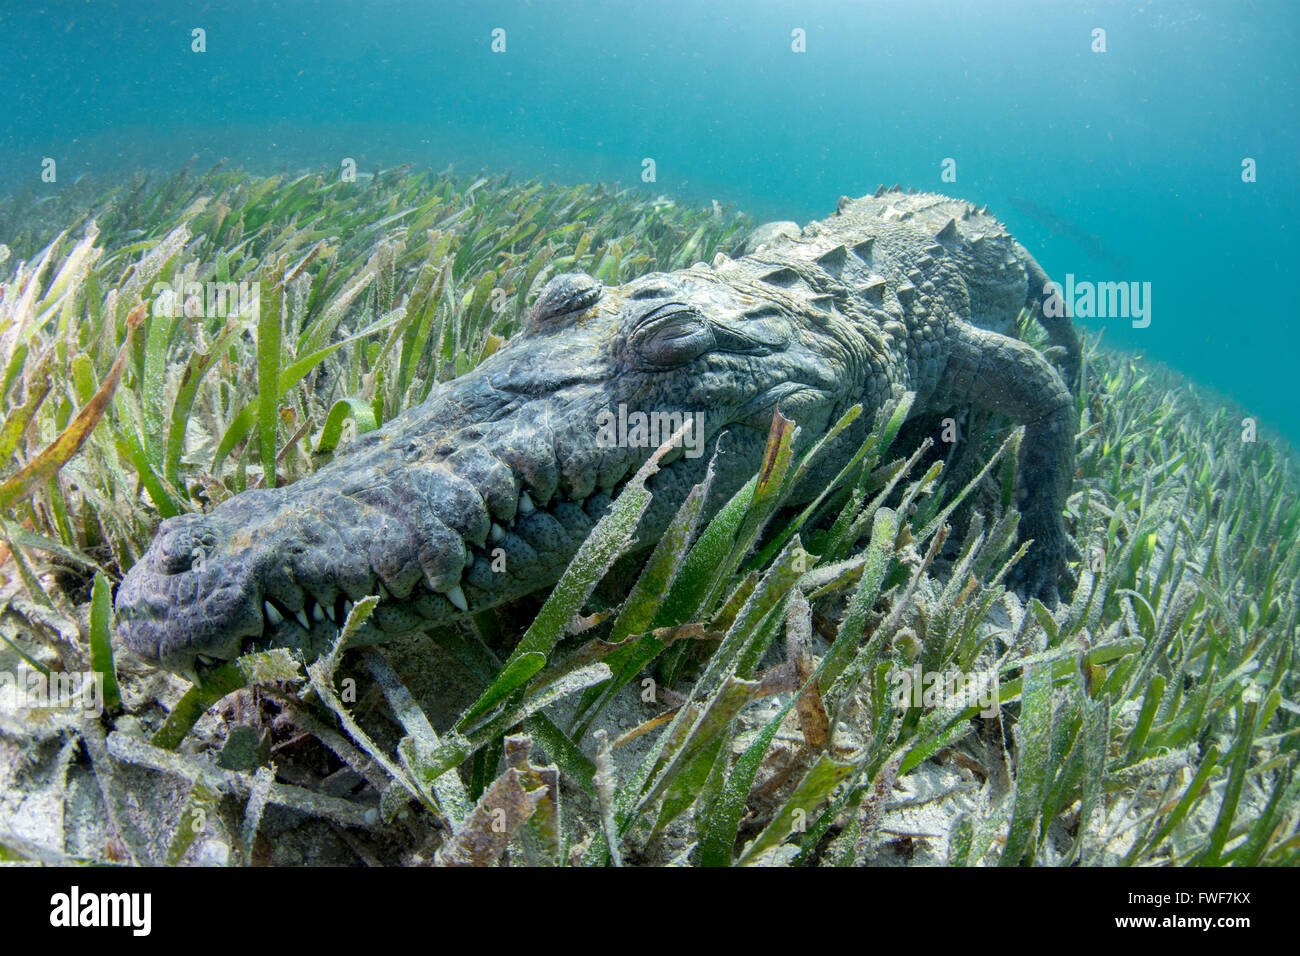 Crocodile d'eau salée, Crocodylus porosus, Jardines de la Reina, à Cuba, mer des Caraïbes Banque D'Images